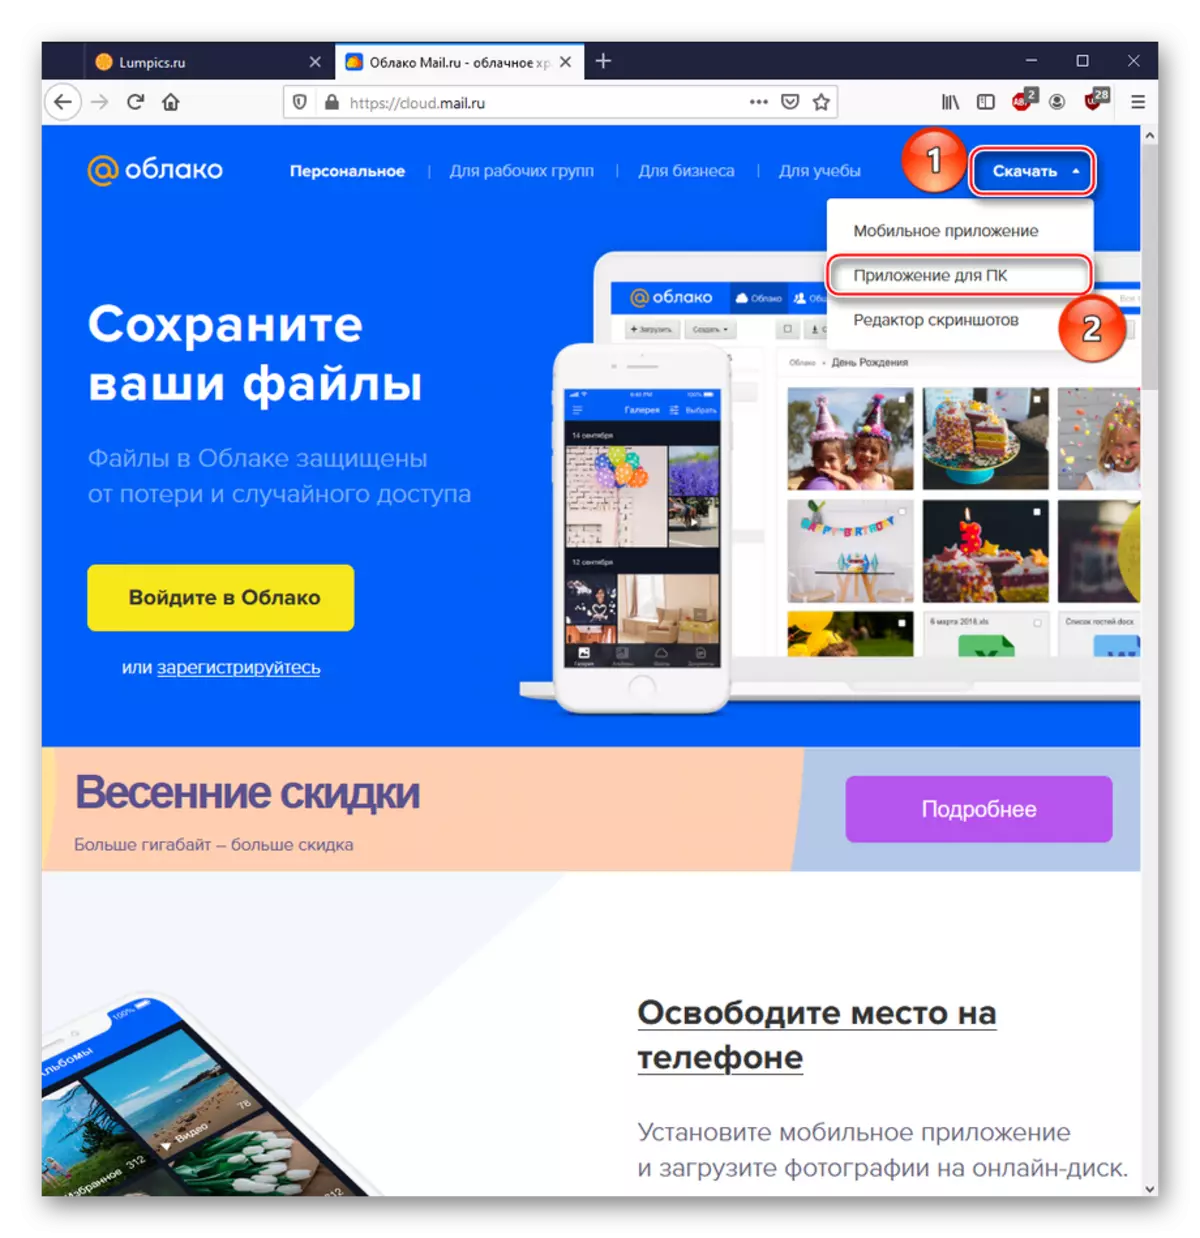 Mengunduh perangkat lunak khusus untuk bekerja dengan layanan cloud@mail.ru